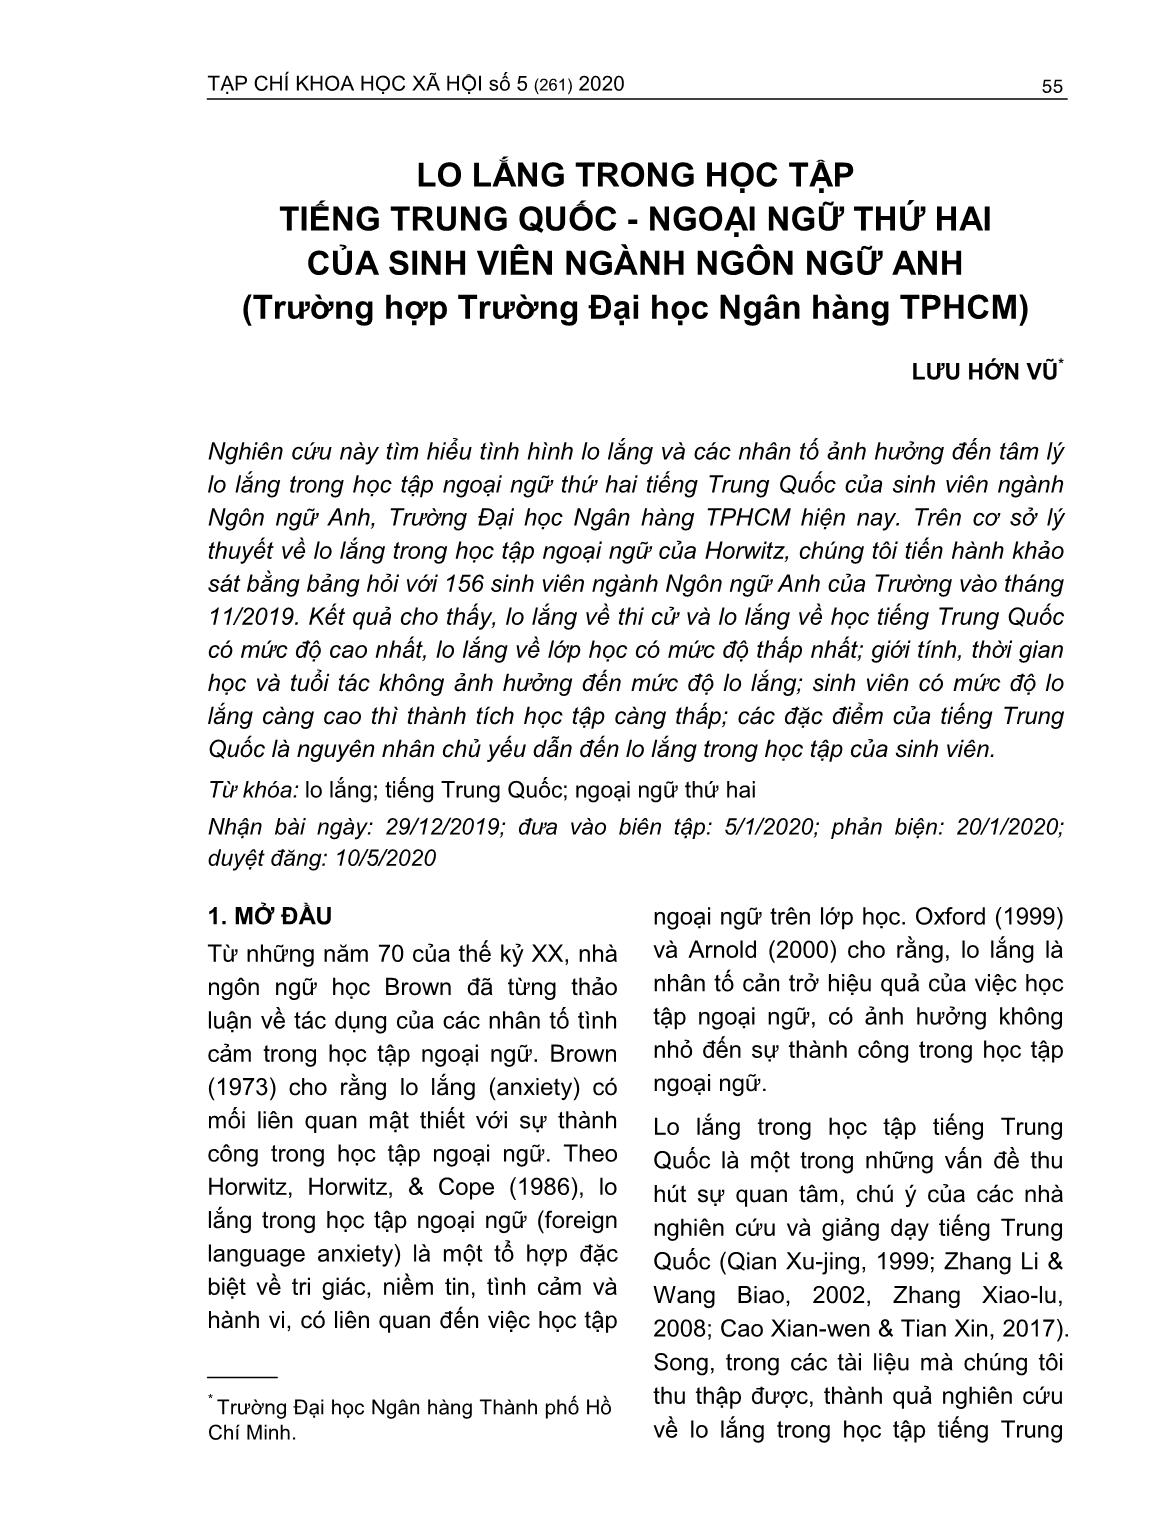 Lo lắng trong học tập tiếng Trung Quốc - Ngoại ngữ thứ hai của sinh viên ngành Ngôn ngữ anh (Trường hợp Trường Đại học Ngân hàng thành phố Hồ Chí Minh) trang 1